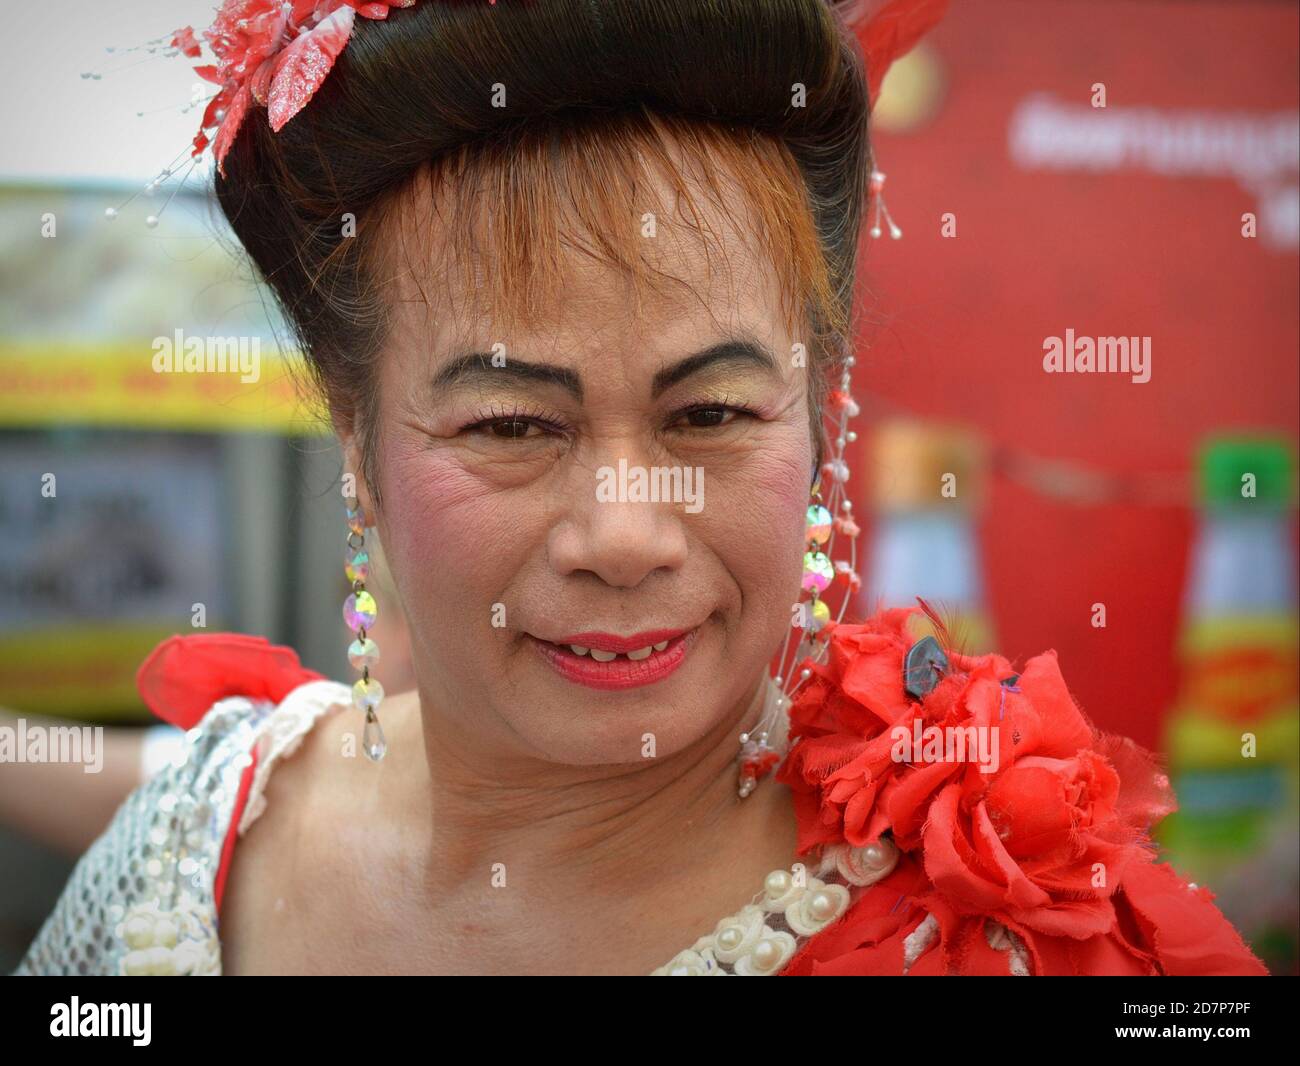 La mujer de mediana edad vestida con un vestido cruzado tailandés (kathoey) sonríe por la cámara en Chinatown durante el año Nuevo Chino. Foto de stock